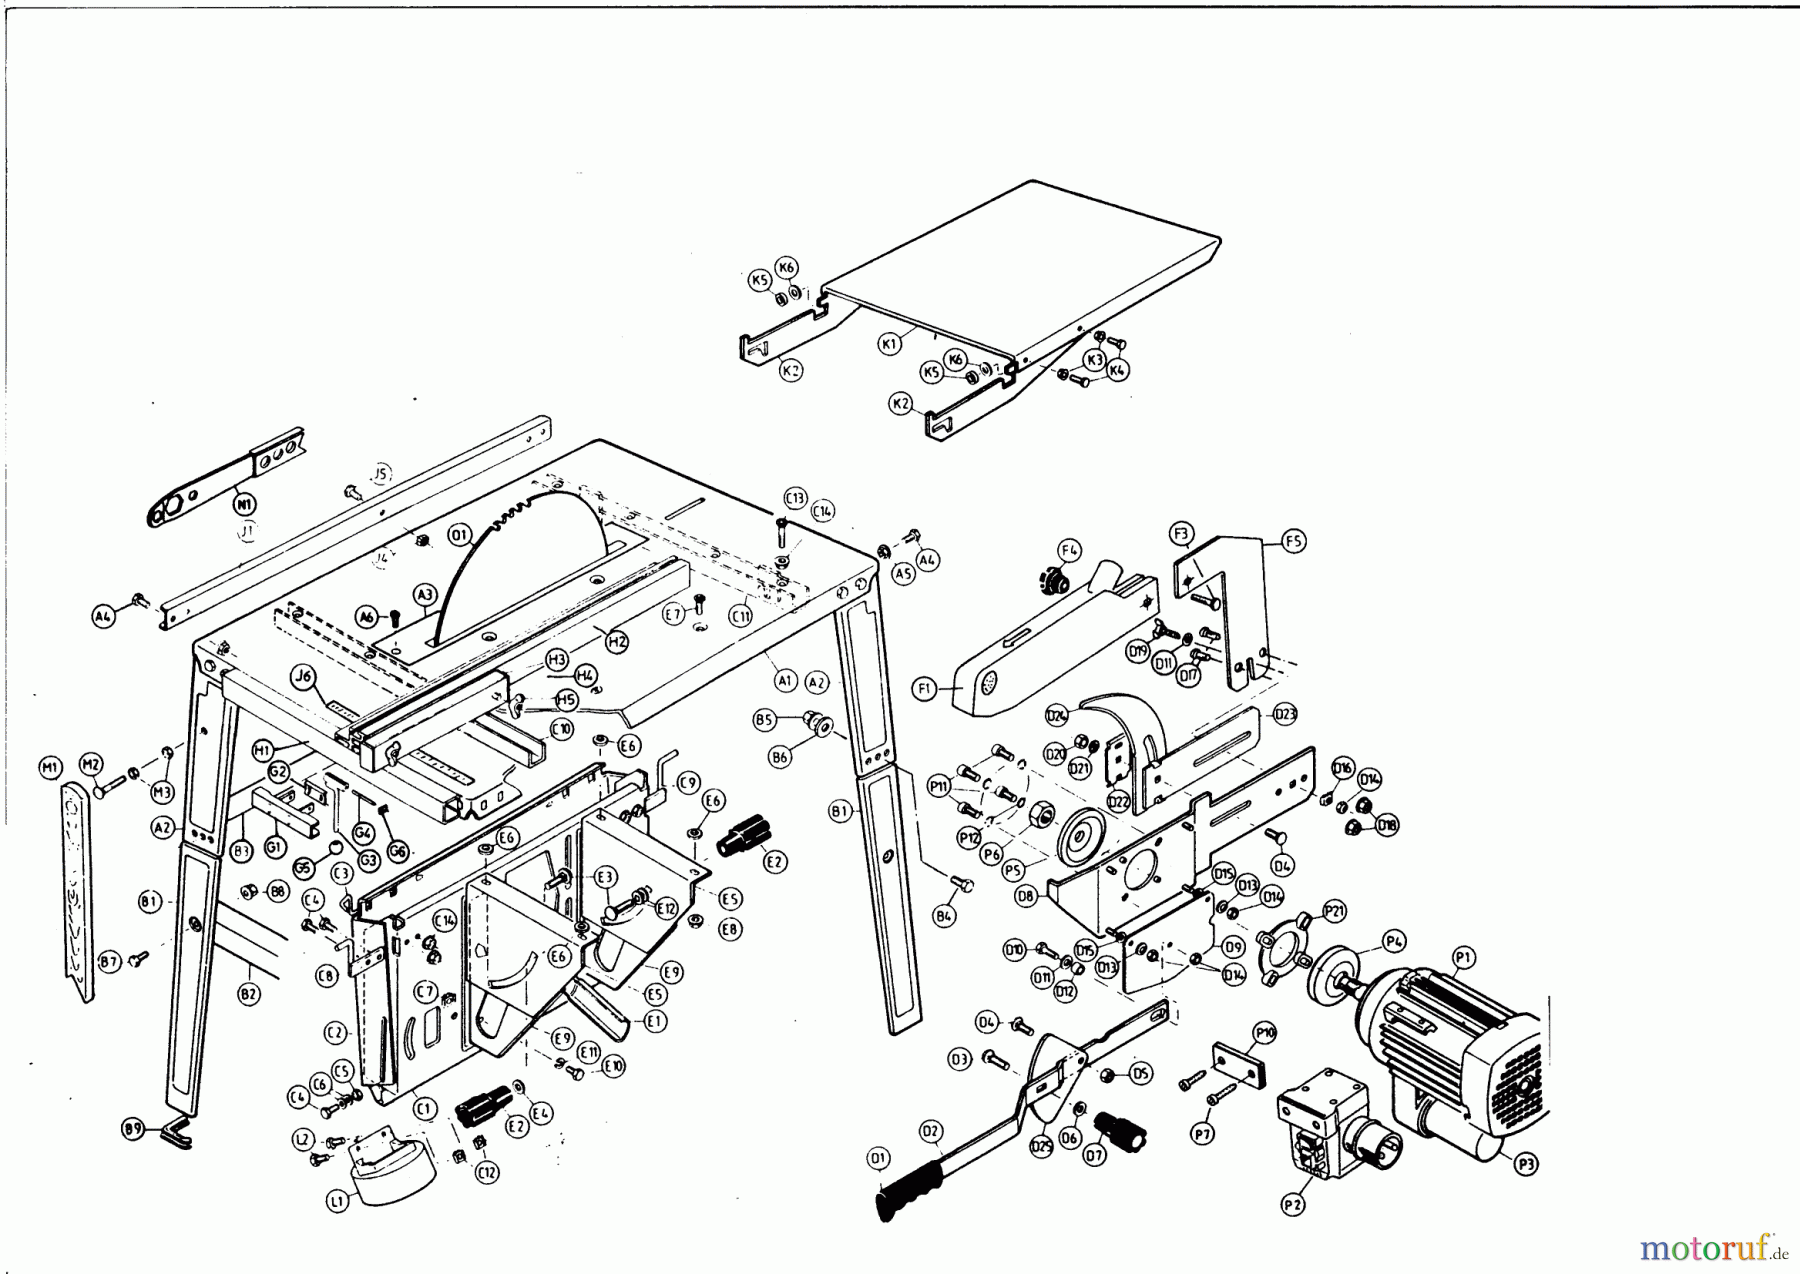  AL-KO Heimwerkertechnik Tischkreissägen NHS 4,5 / 220V  12/1994 Seite 1